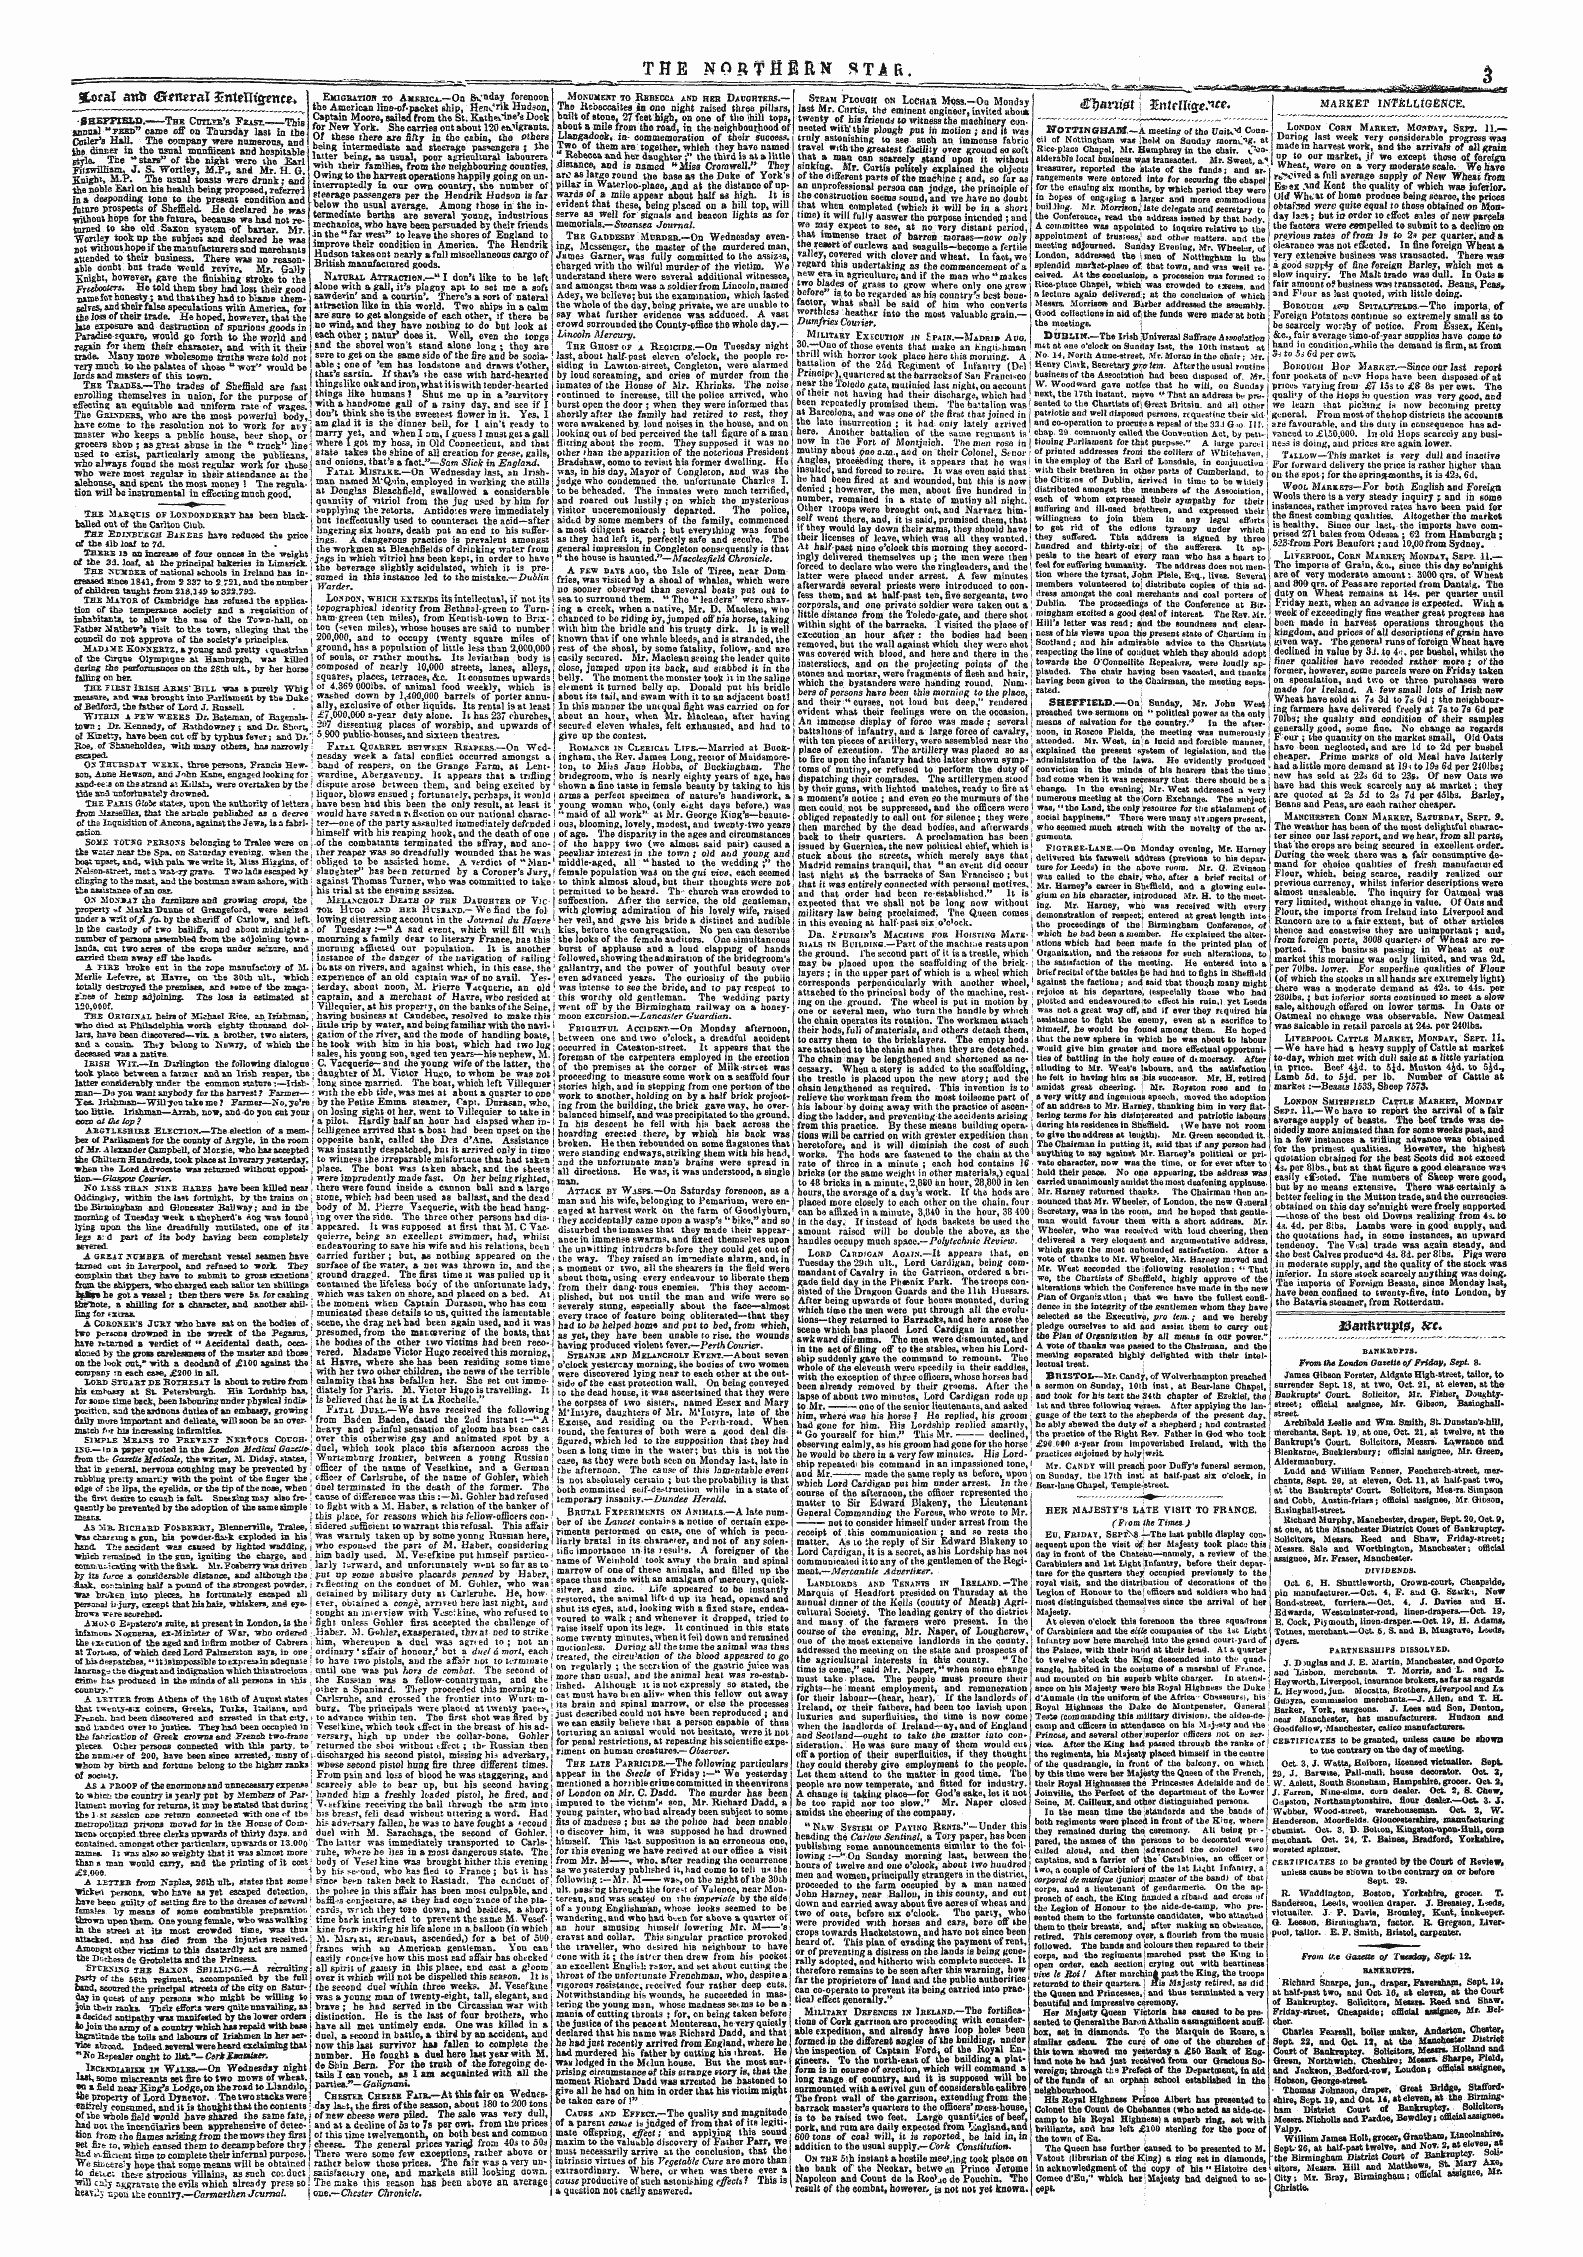 Northern Star (1837-1852): jS F Y, 3rd edition - %Txal Attfc &Lt;Sfmrai 3enuutwnce*